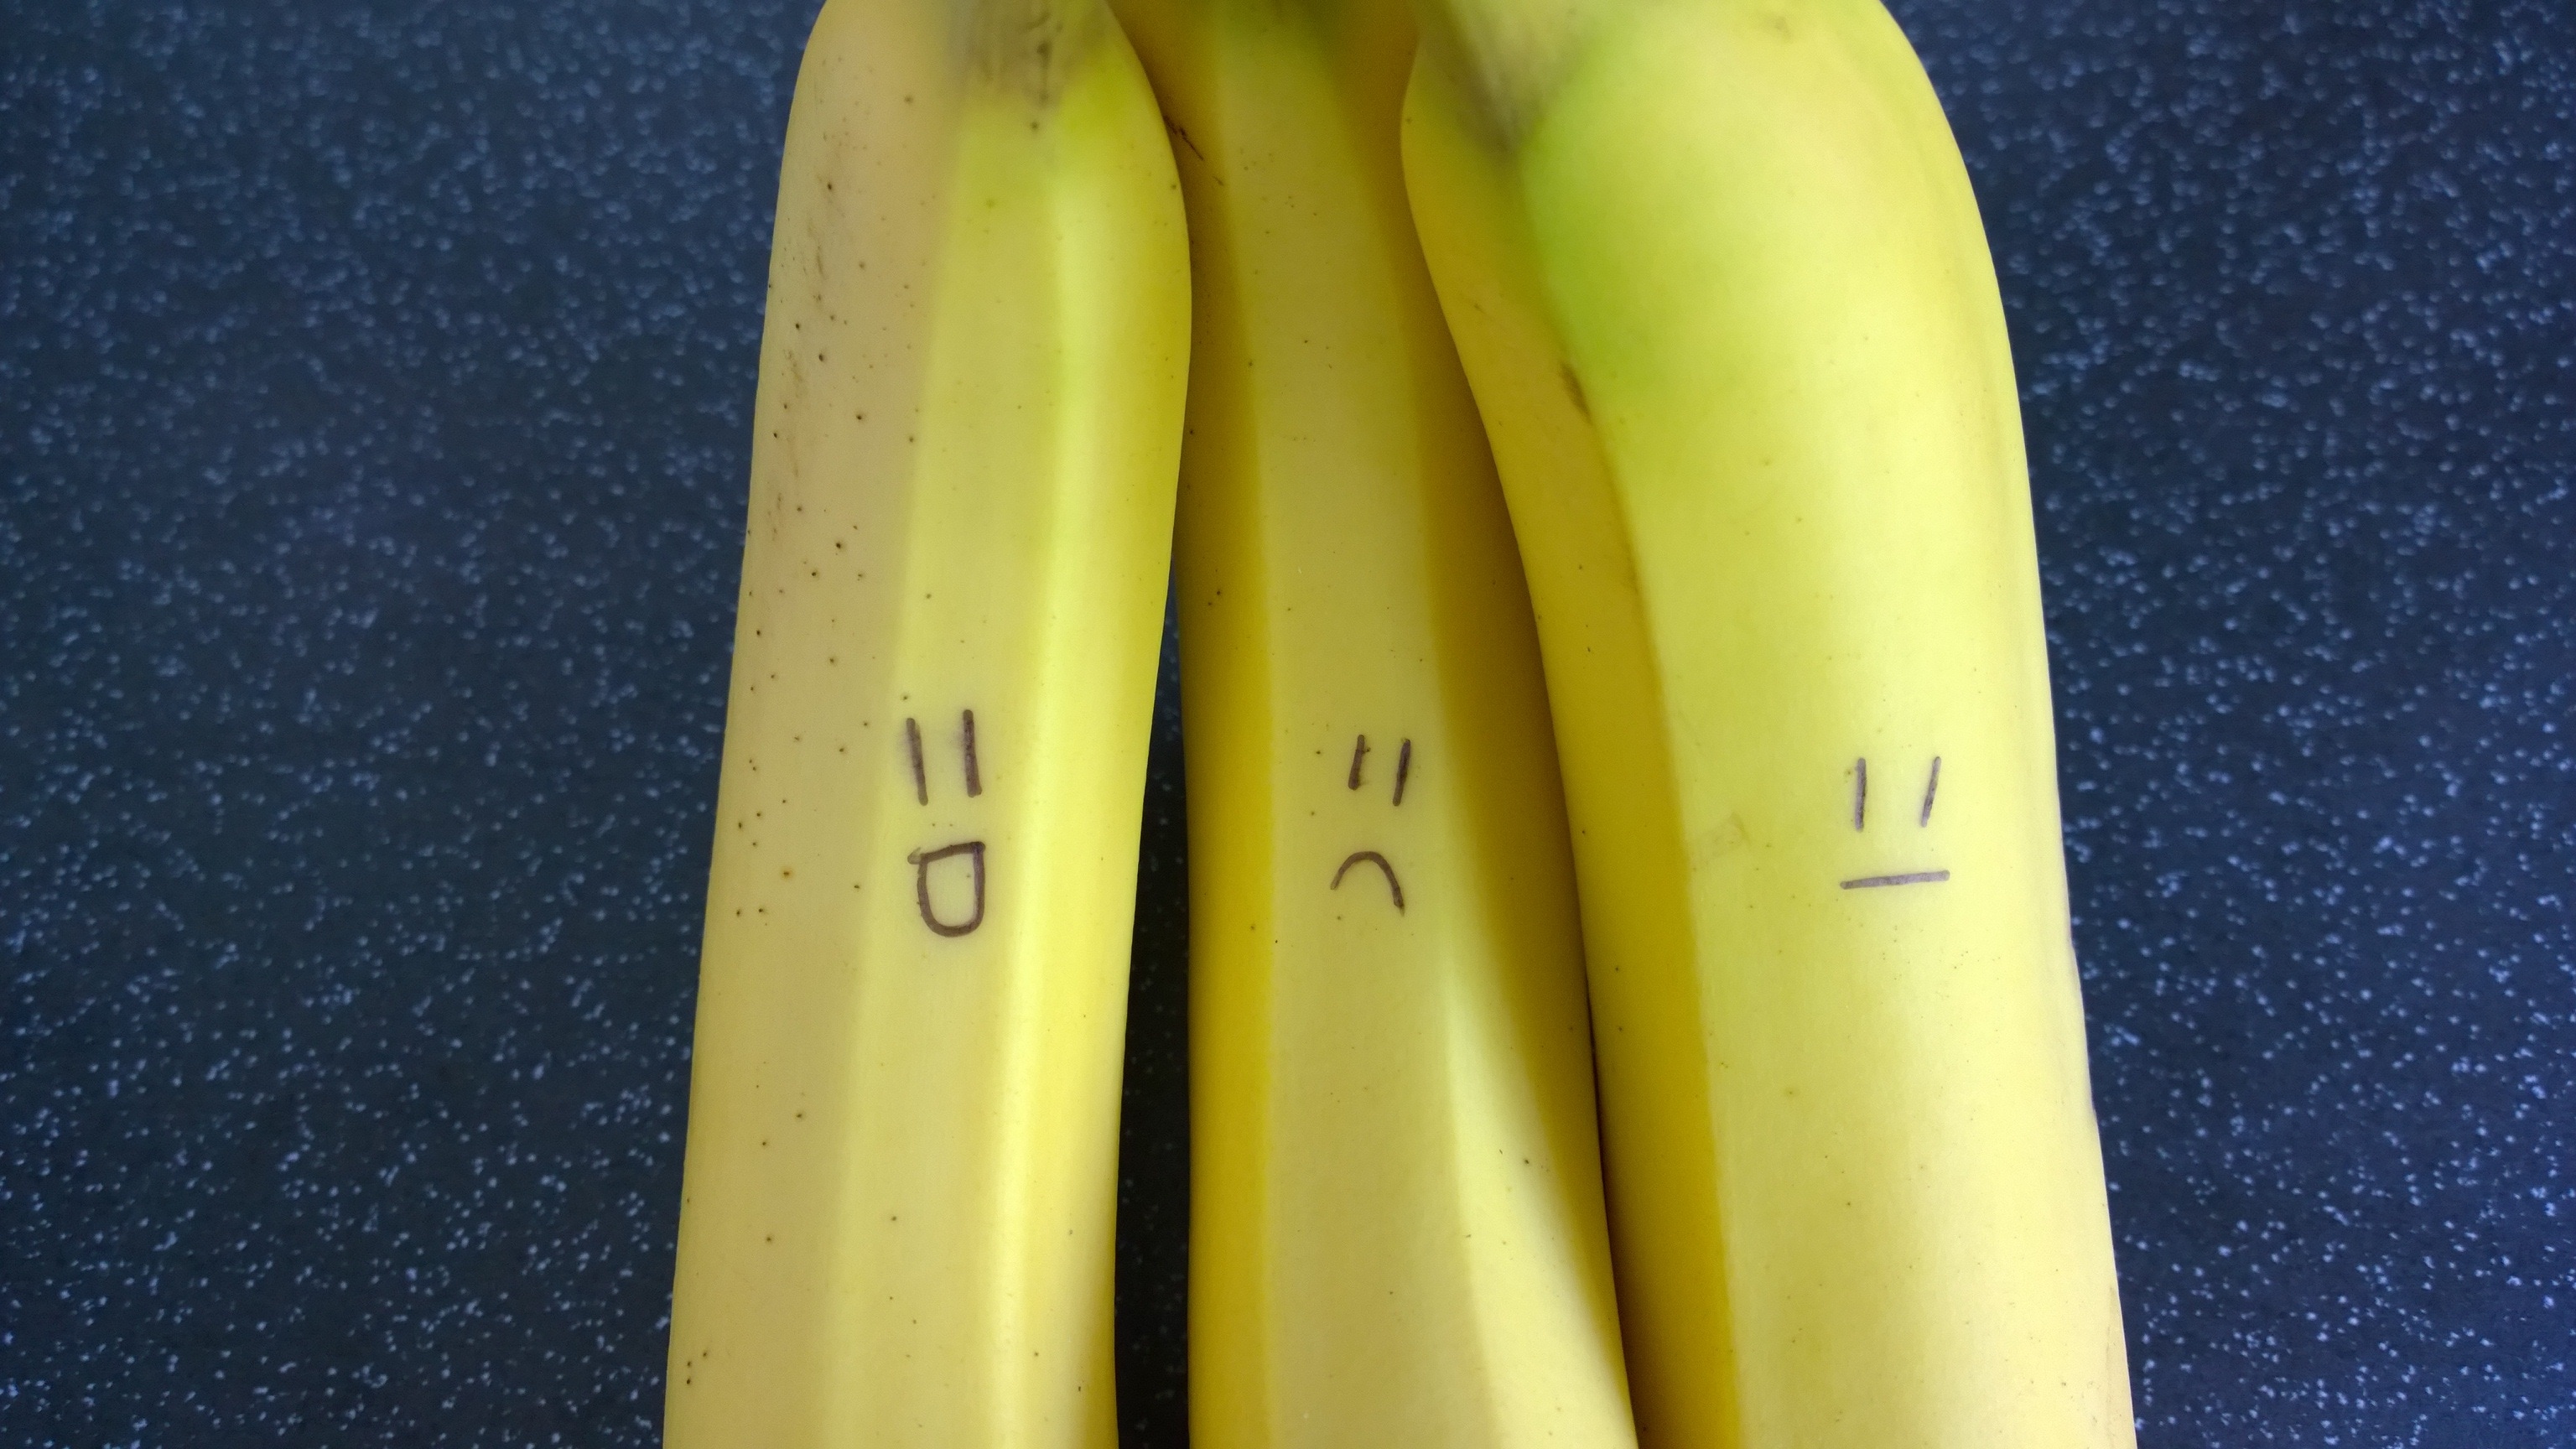 3 banana